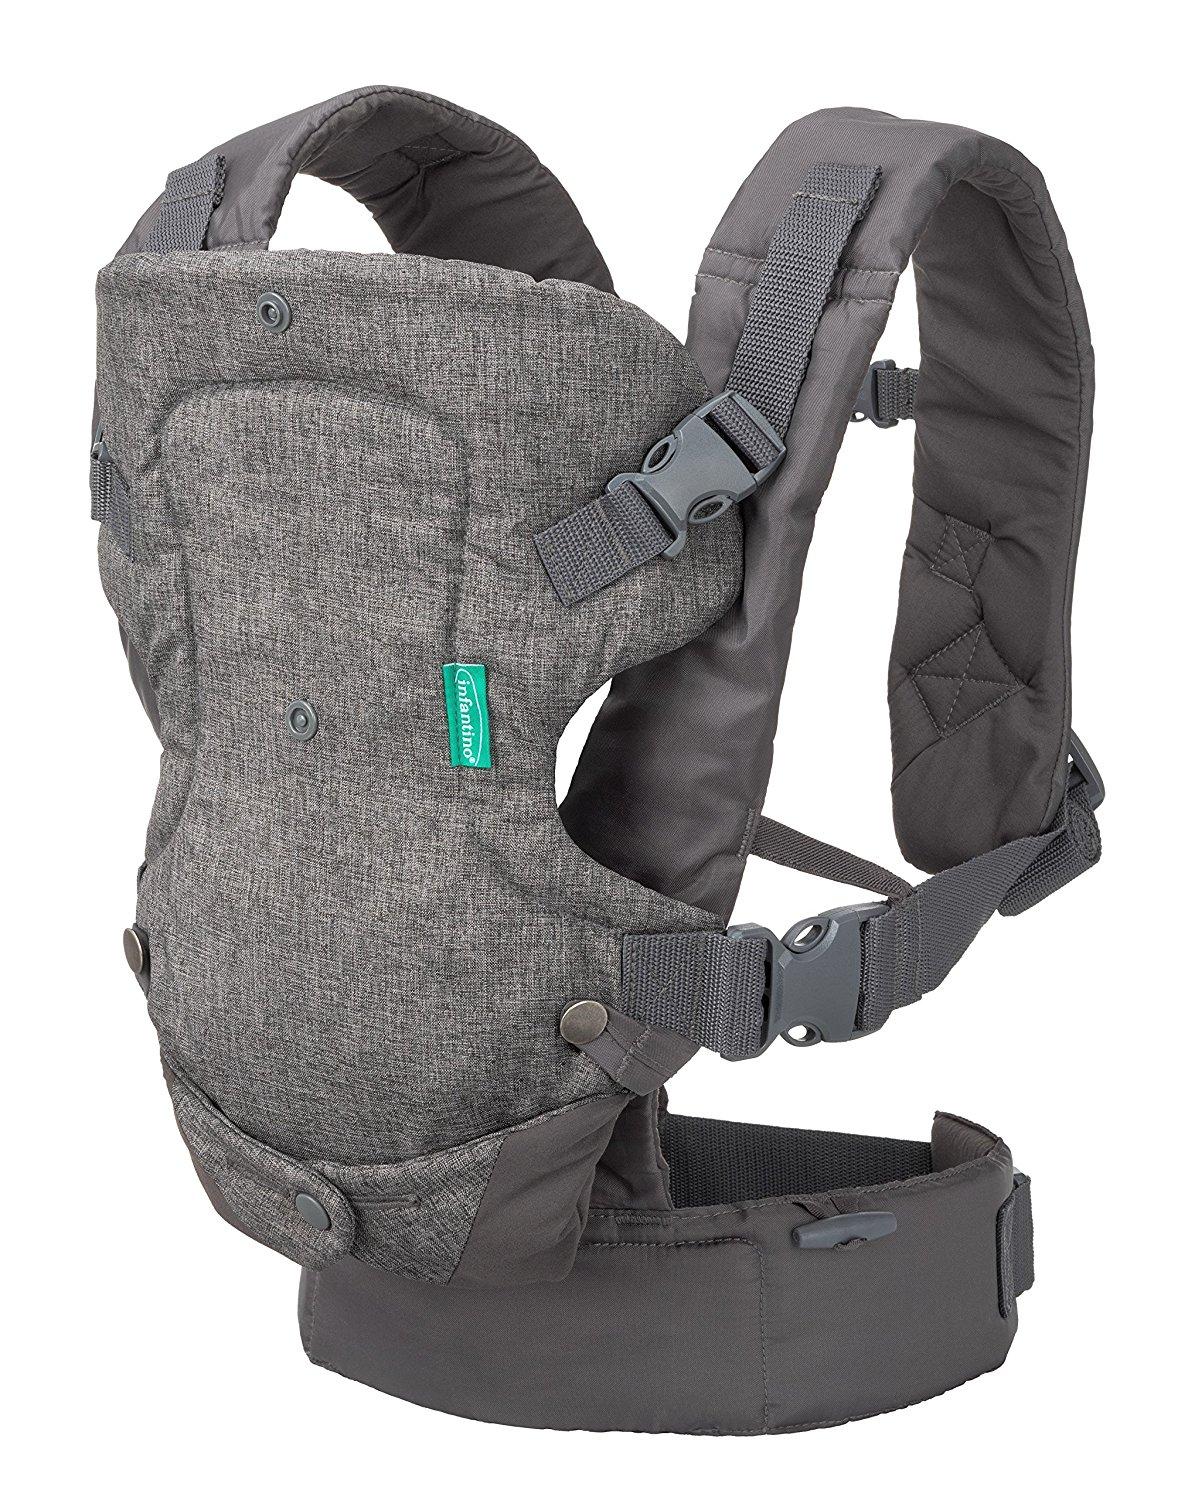 Baby Shoulder Strap Portable Carrier Toddler Sling Backpack Ergonomic & Lightweight